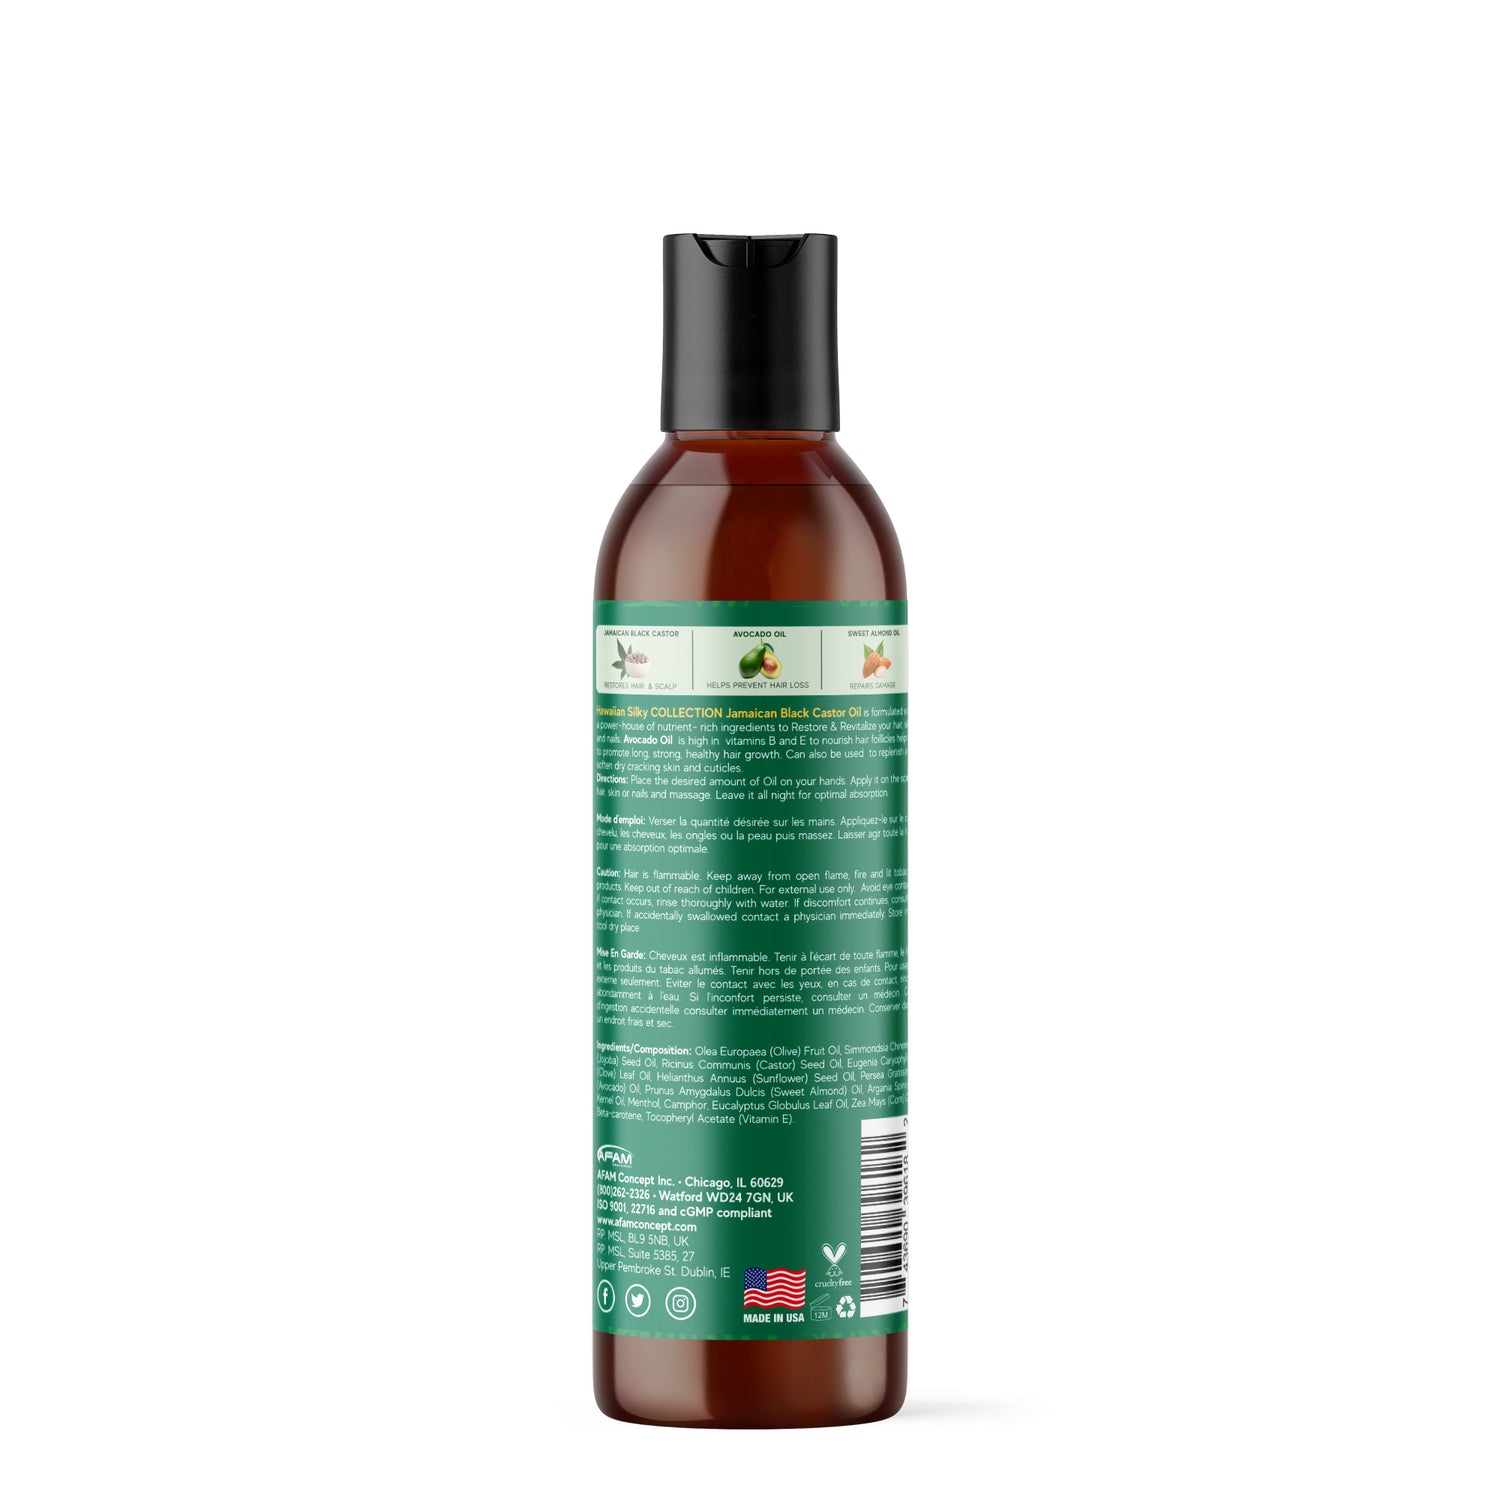 Avocado Oil Vs. Castor Oil For Hair Growth – VedaOils